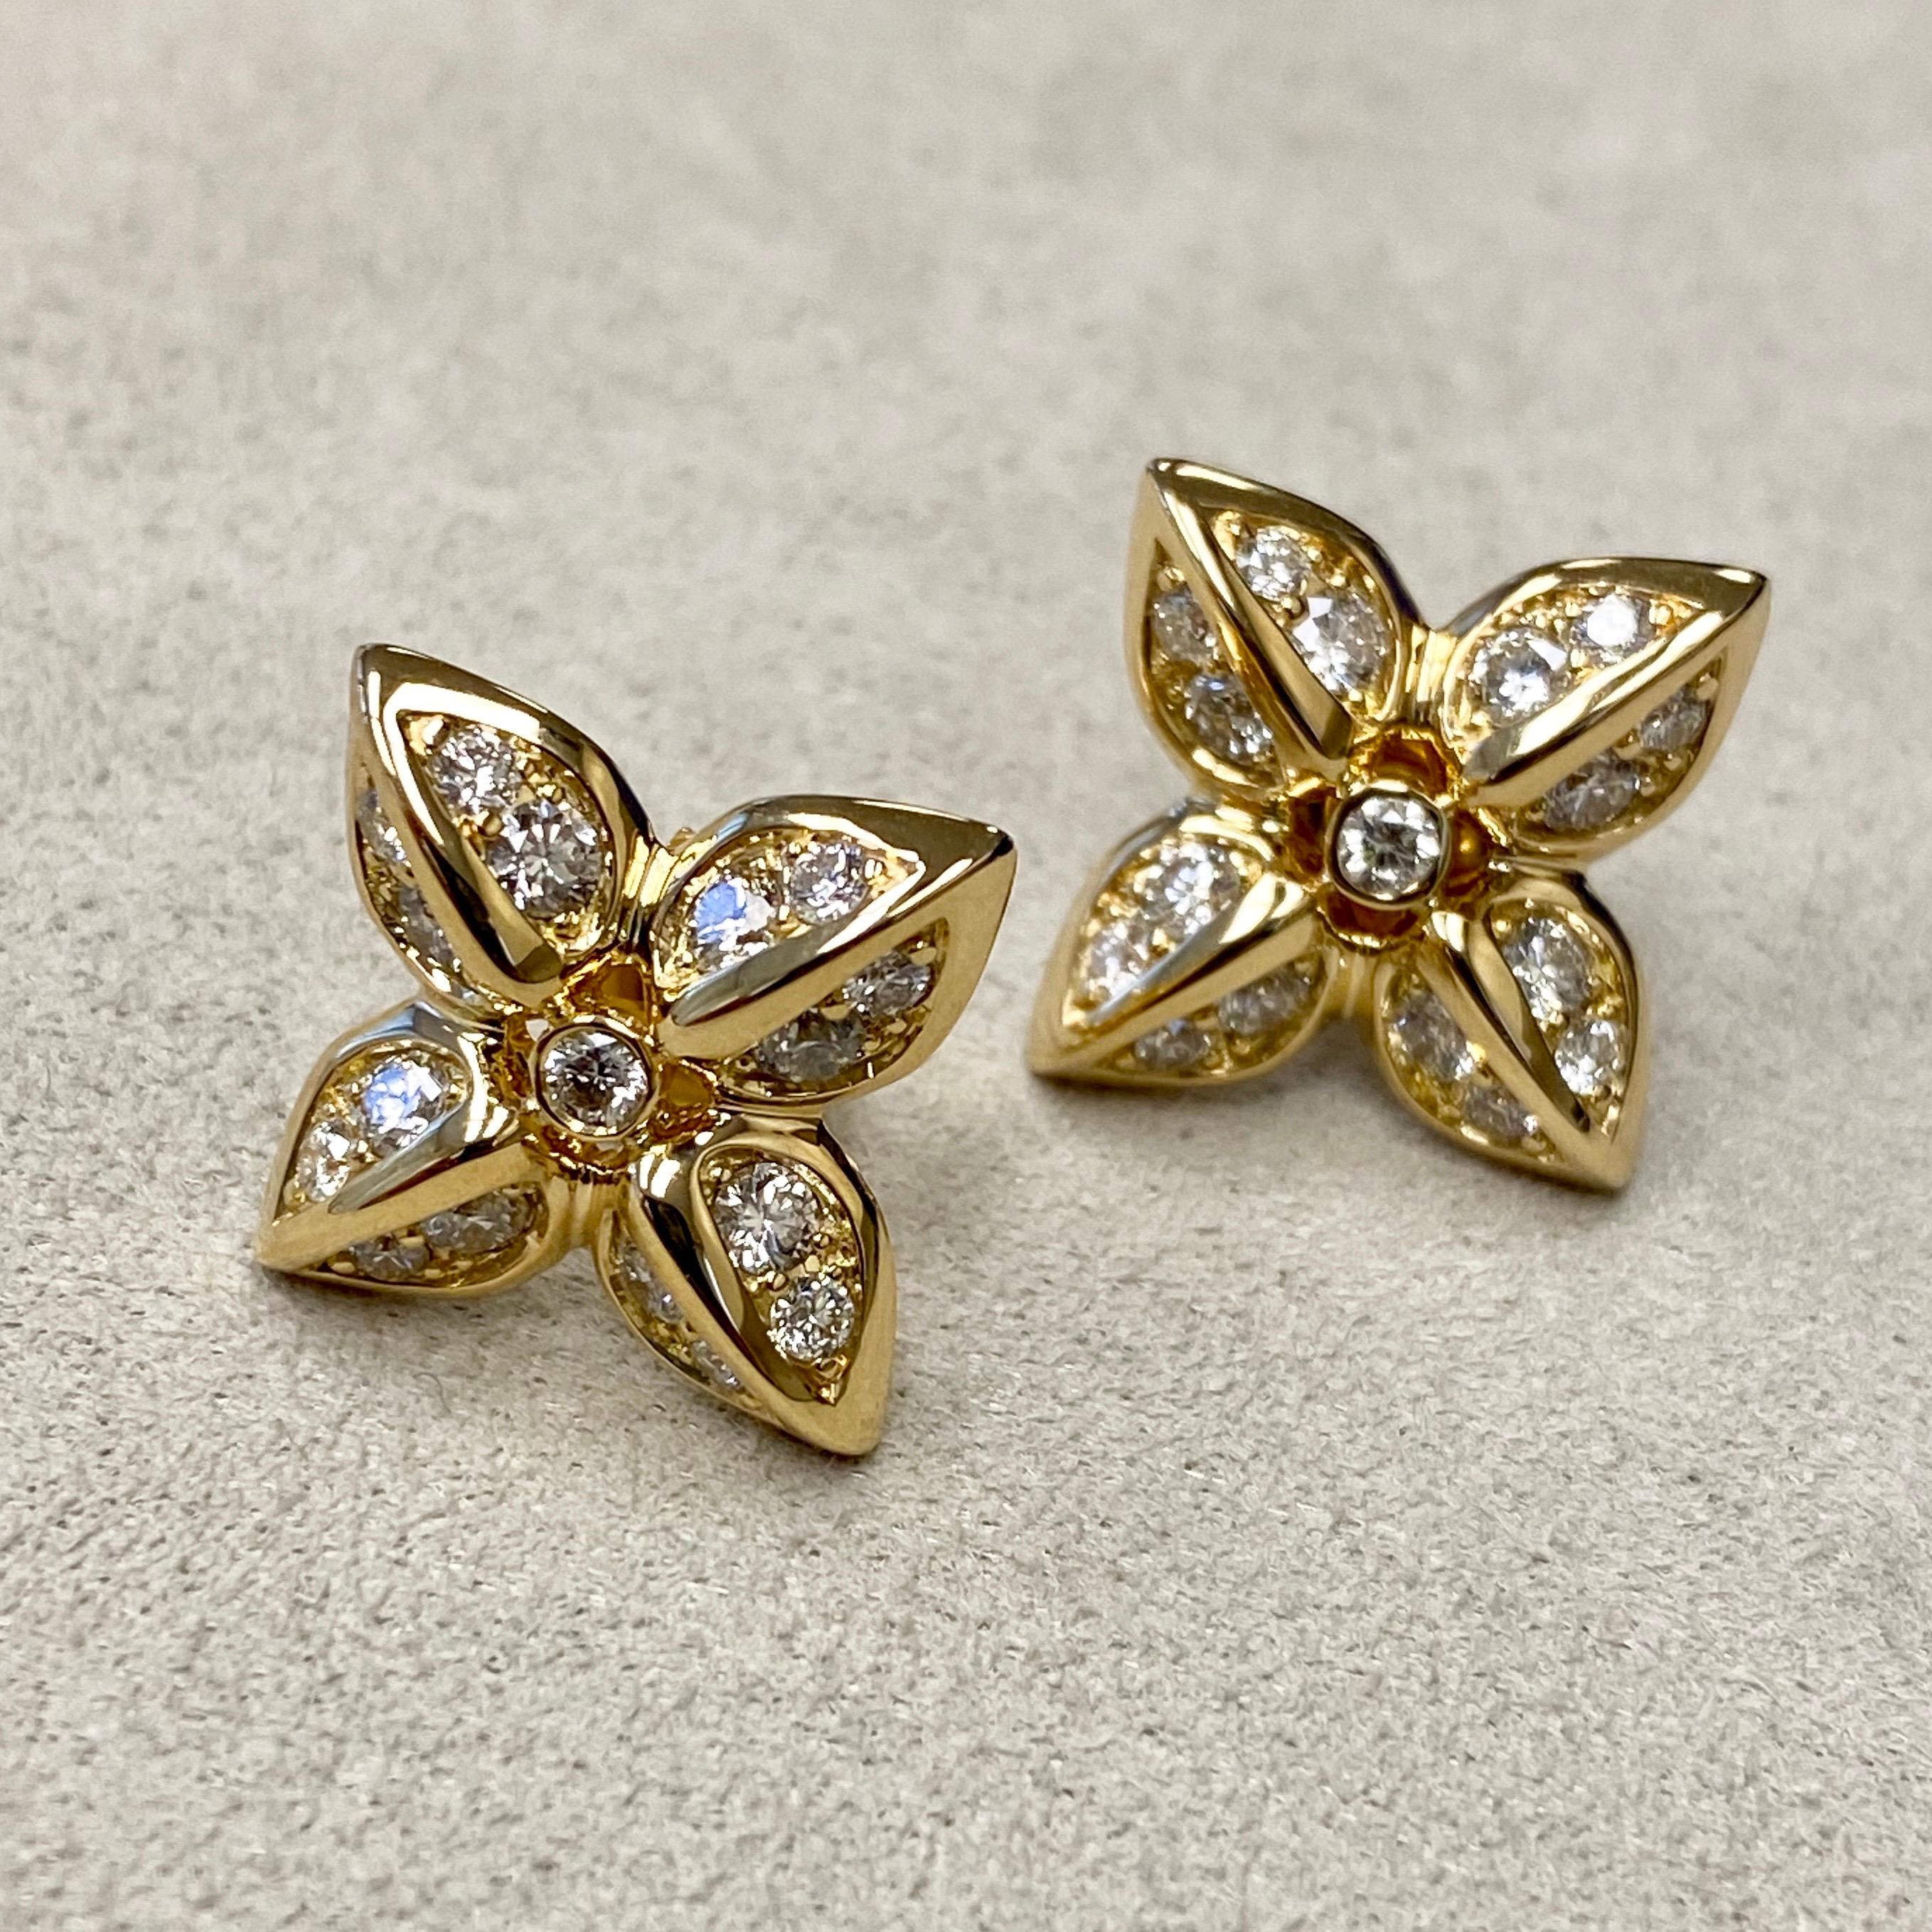 Erstellt in 18kyg
Diamanten ca. 1.10 Karat
Limitierte Auflage

Verleihen Sie Ihrem Look das gewisse Etwas mit diesen eleganten Ohrringen aus Candy Blue Topas und Mondquarz. Sie sind aus 18-karätigem Gelbgold gefertigt und mit 1,10 Karat Diamanten